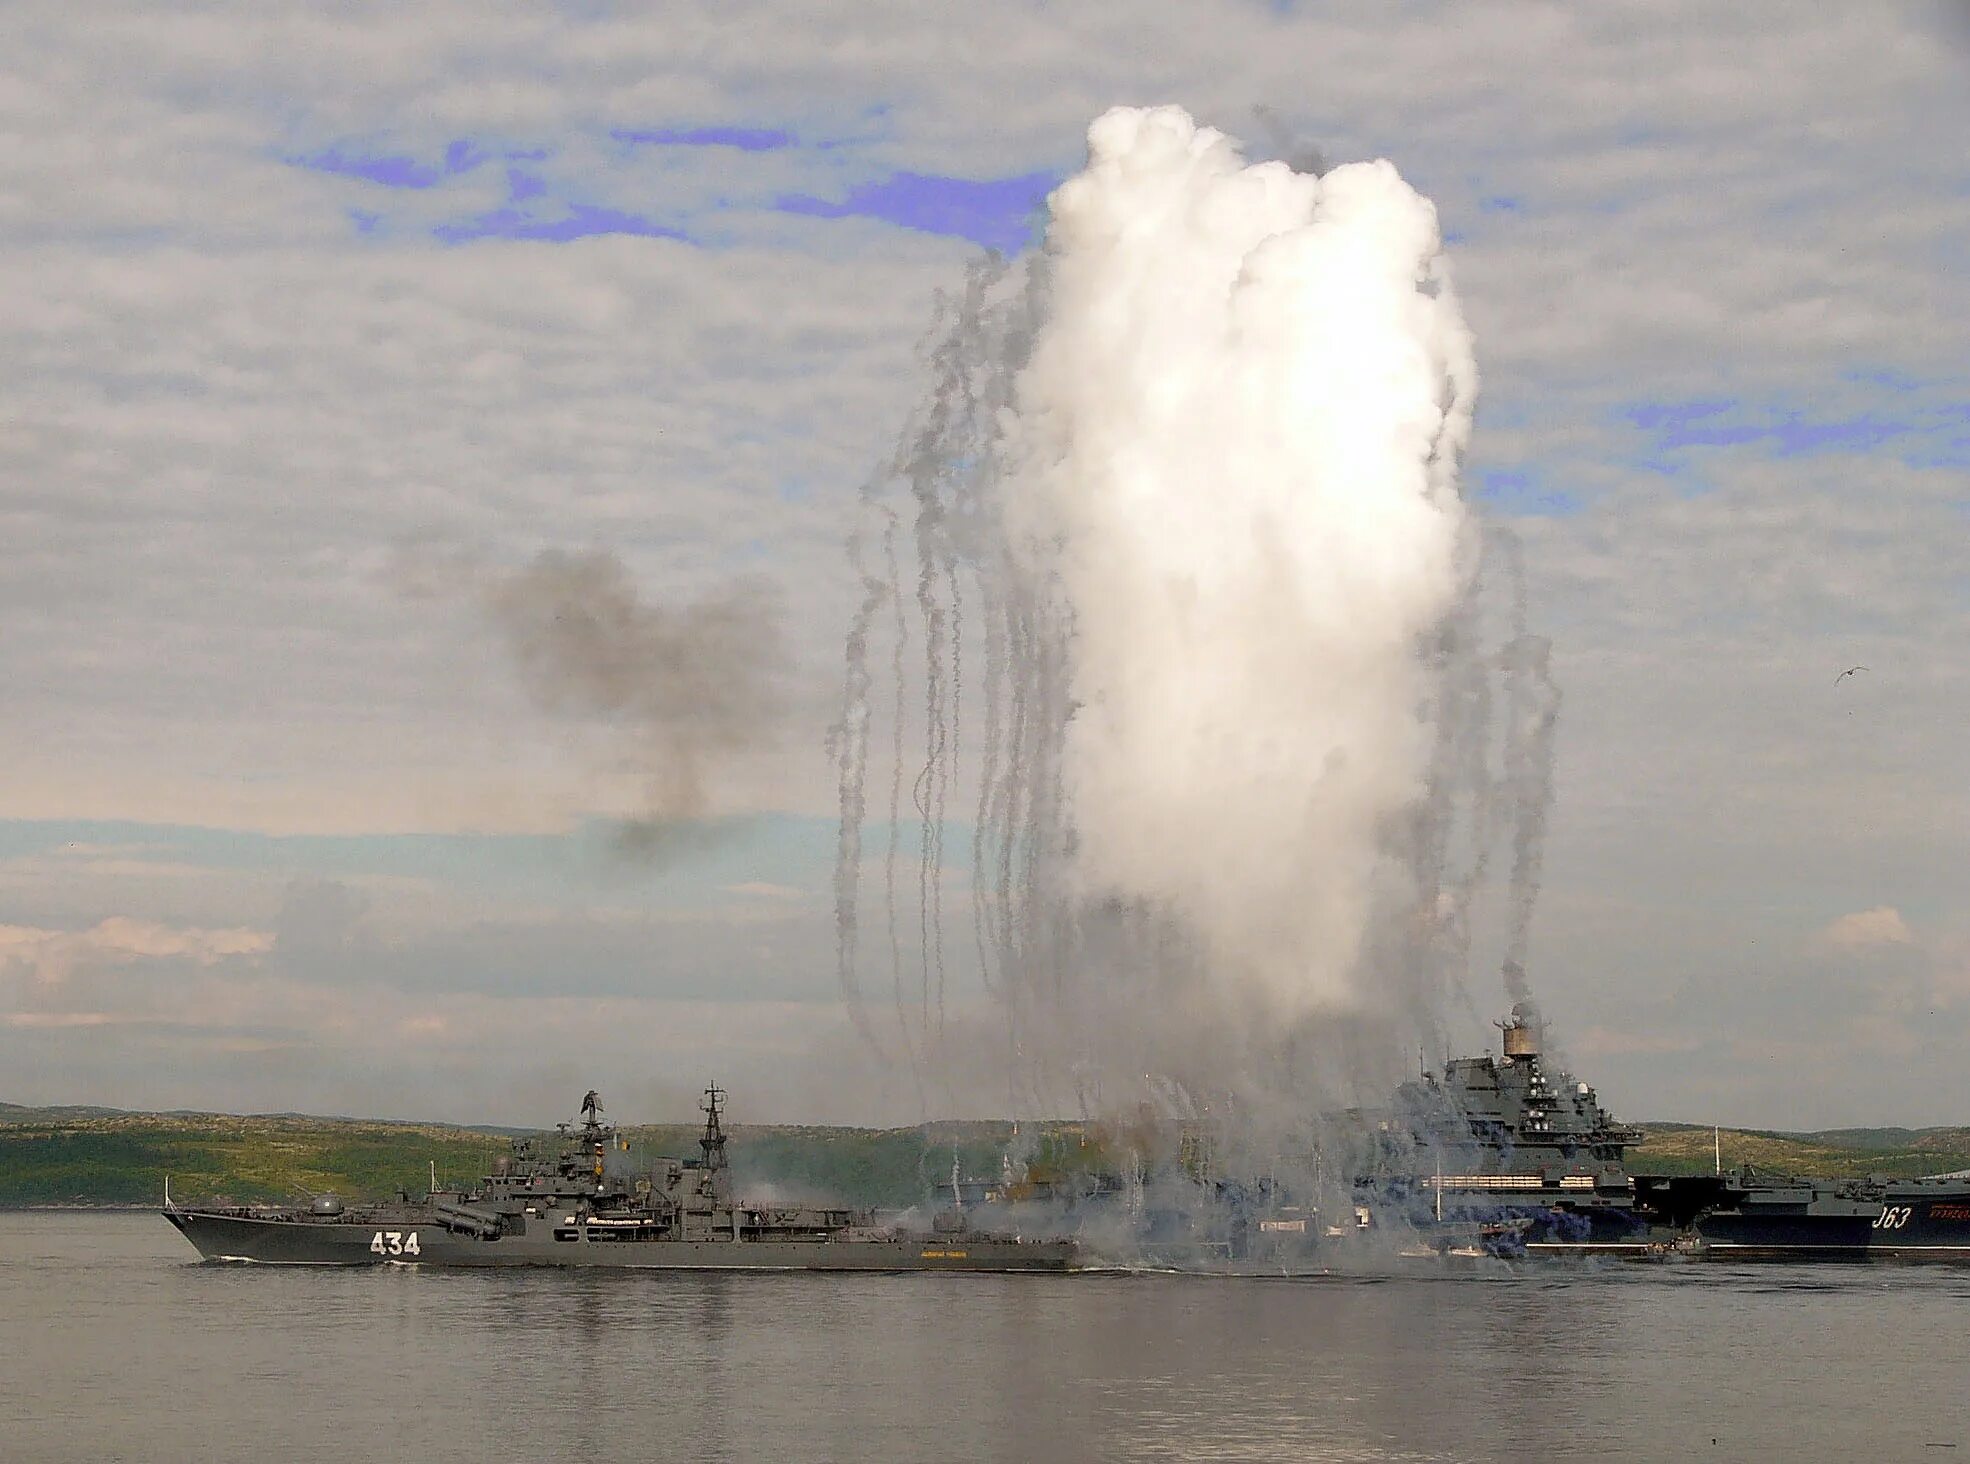 5 мая 2006. Снаряд-постановщик помех. Постановка помех кораблем. Дымовая завеса корабля. Корабельный комплекс выстреливаемых помех ПК-10.